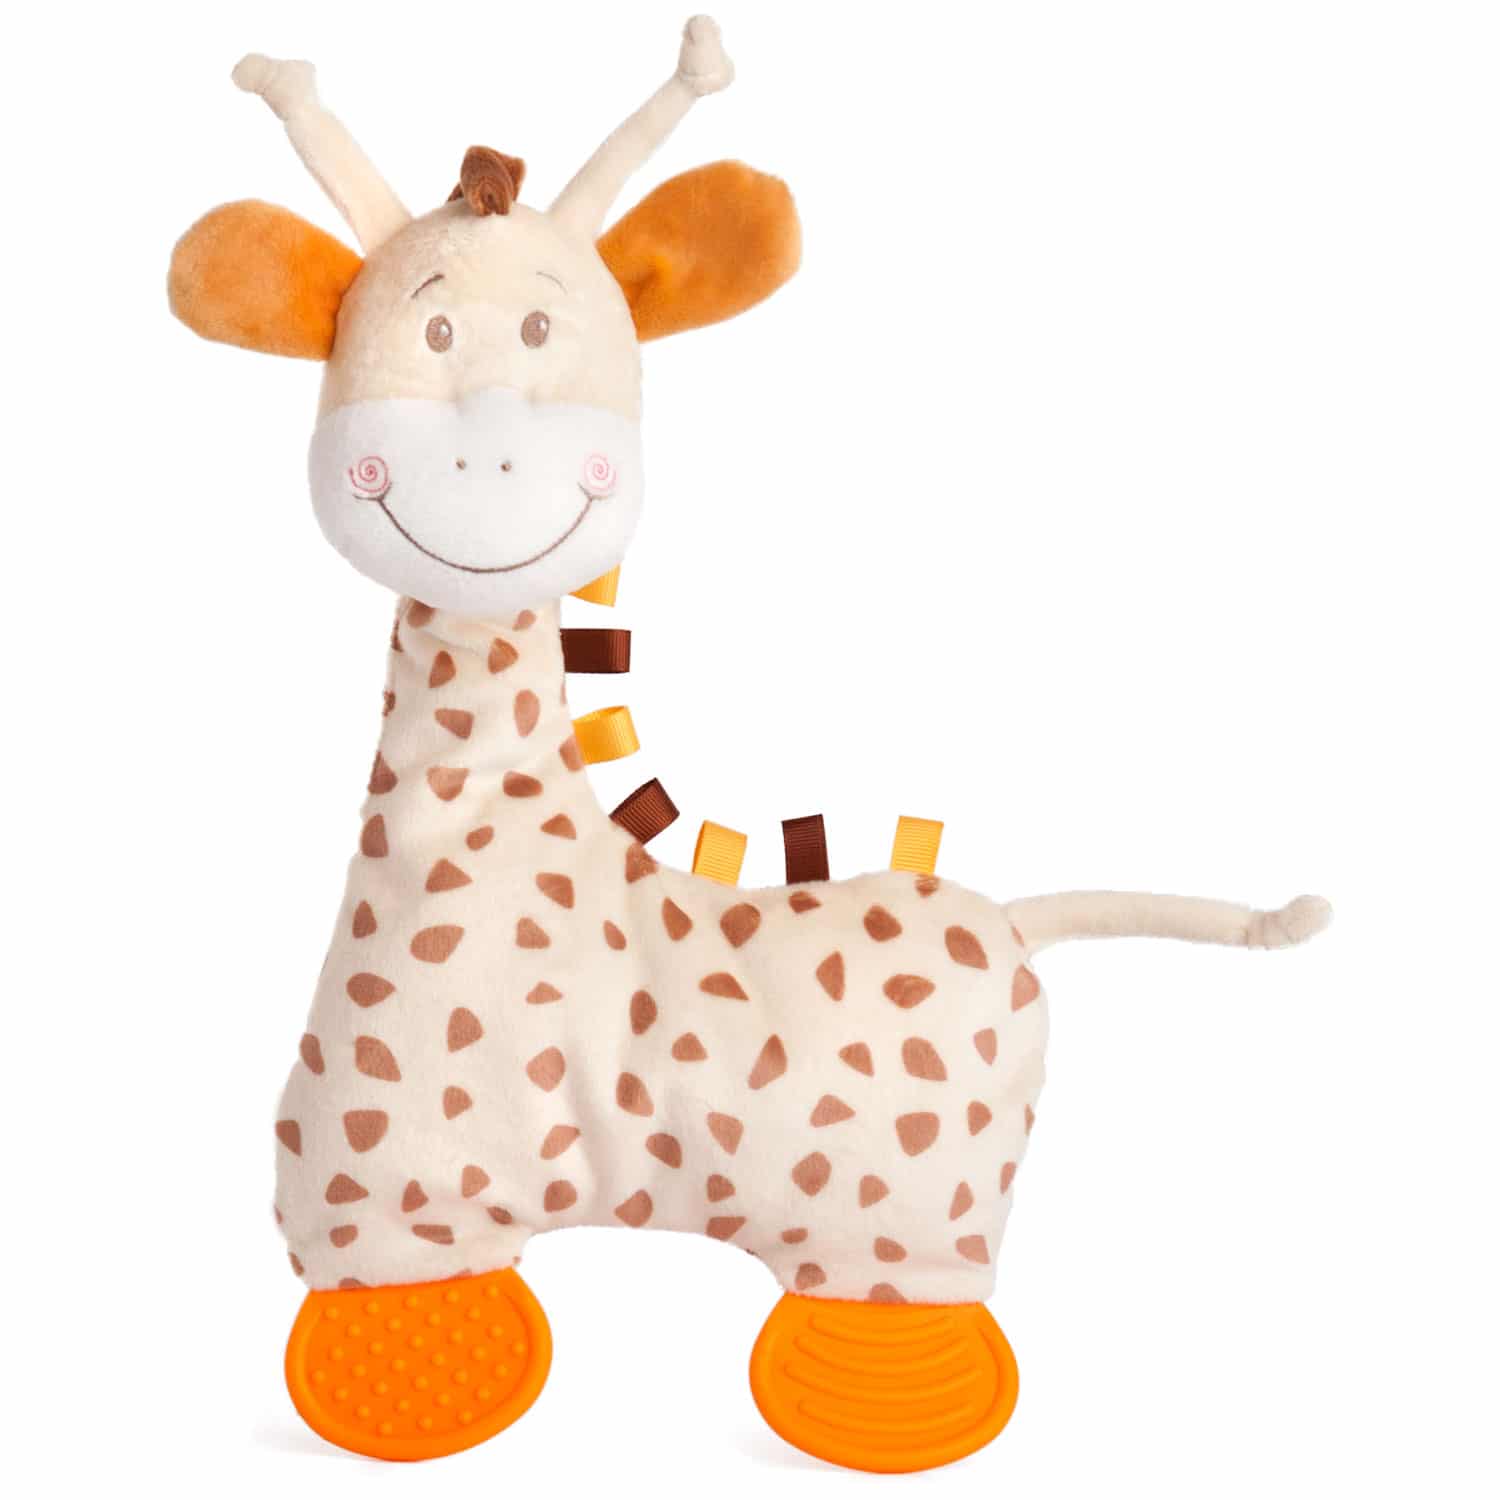 Soft baby toy giraffe Heck Jr